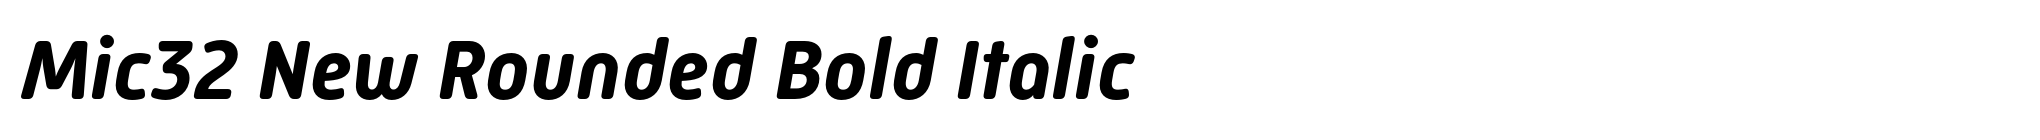 Mic32 New Rounded Bold Italic image